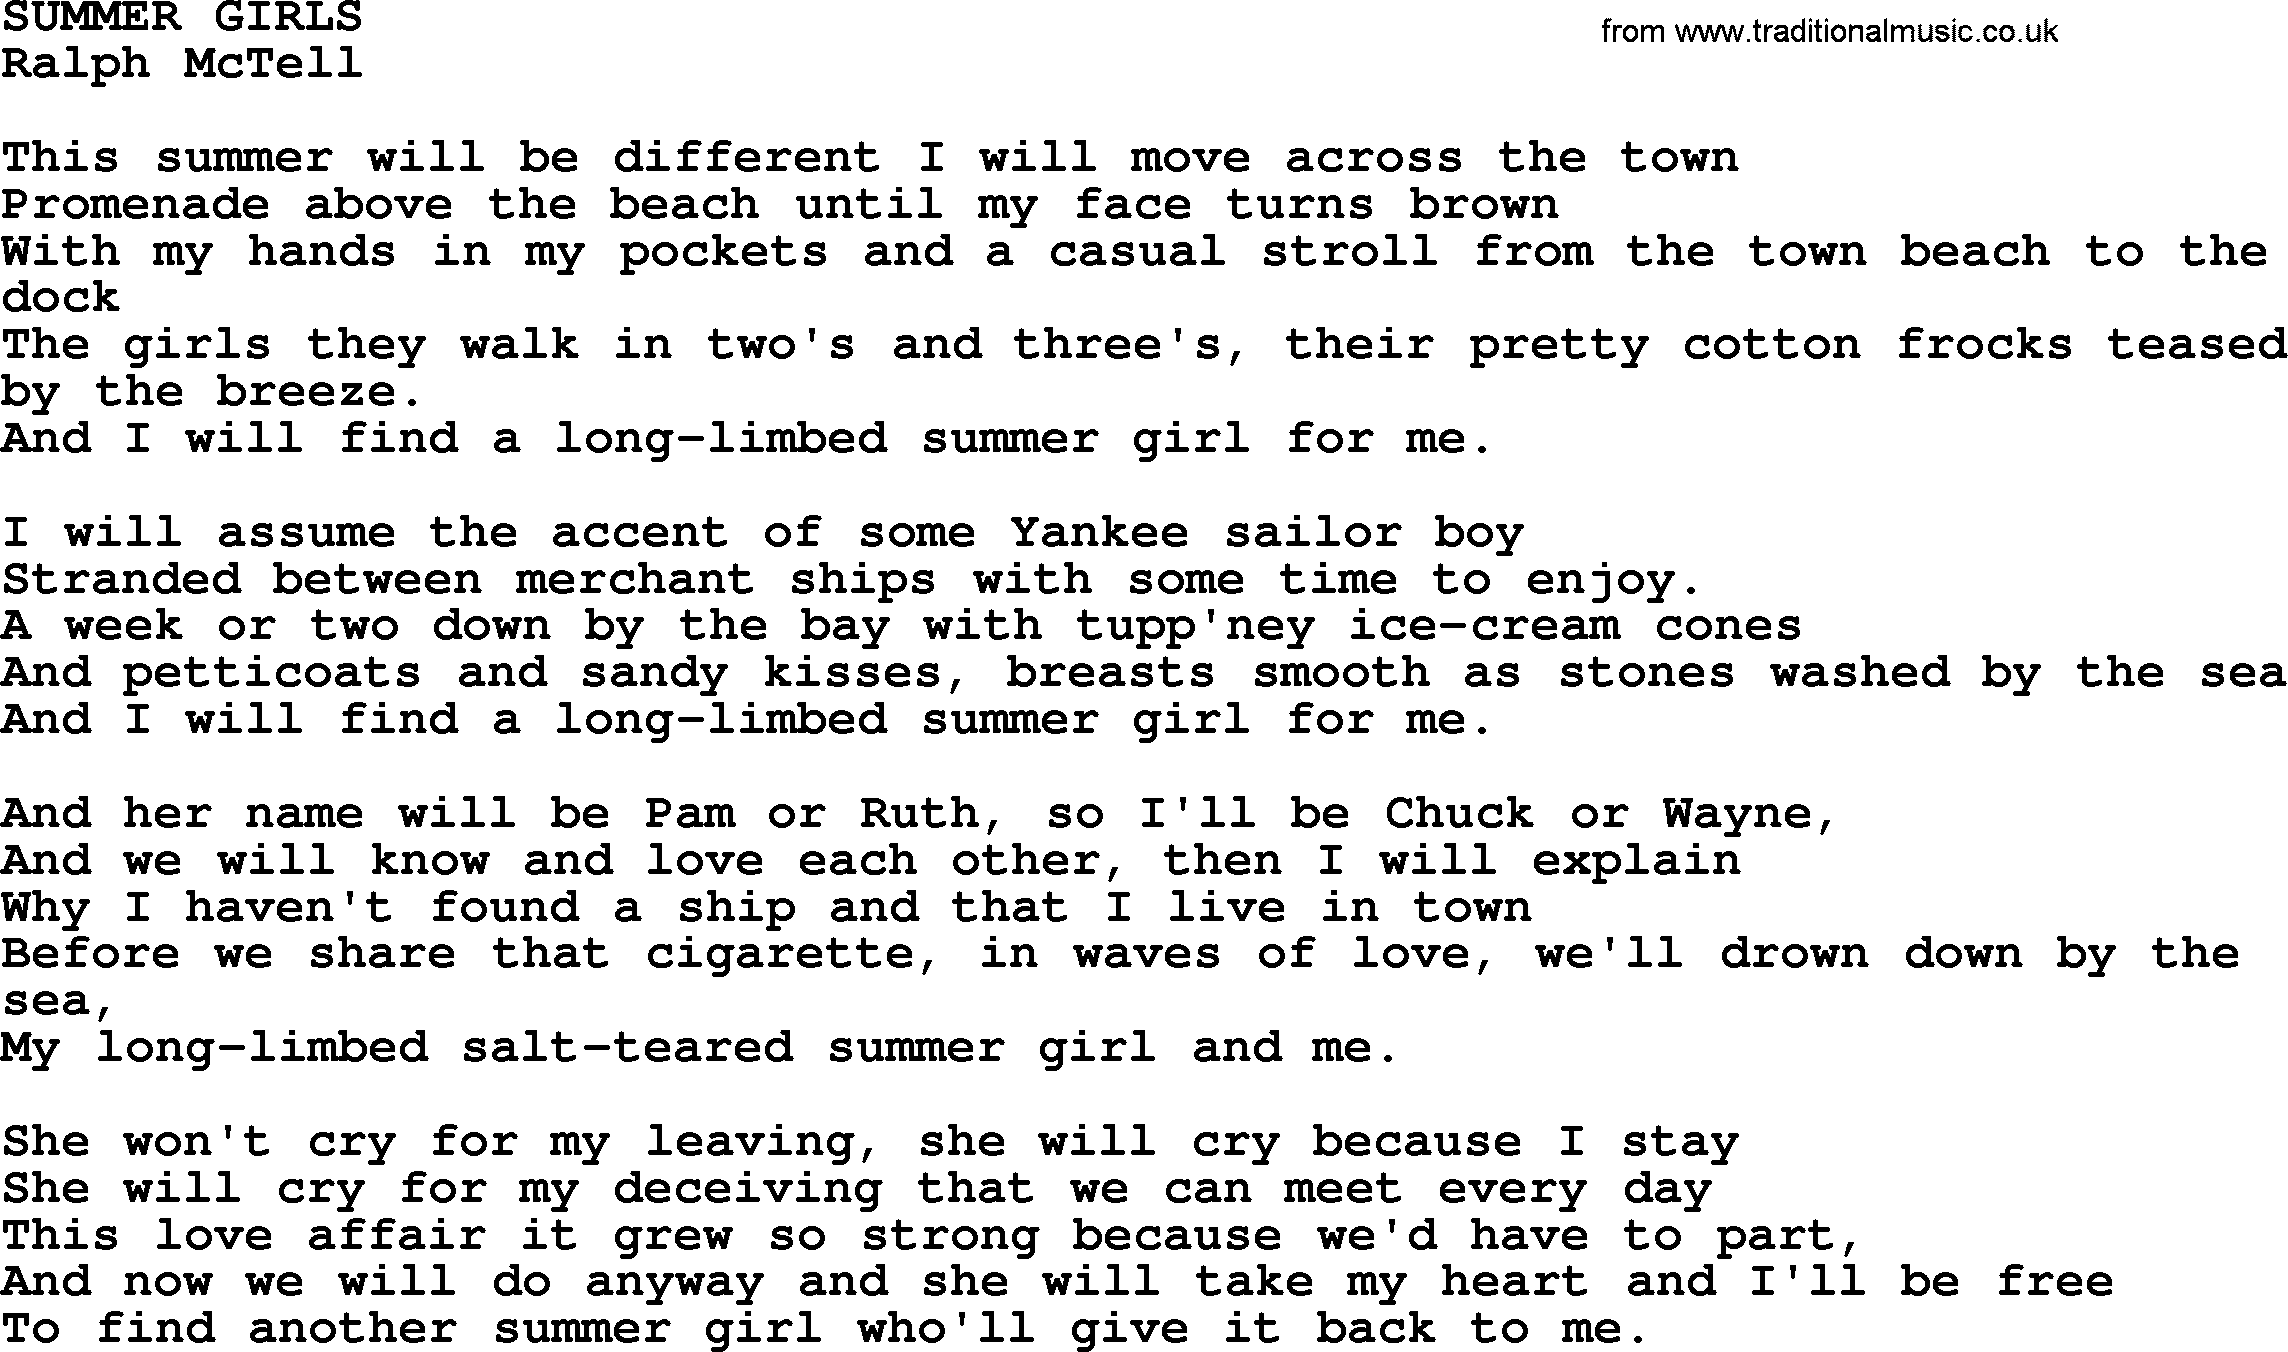 Ralph McTell Song: Summer Girls, lyrics